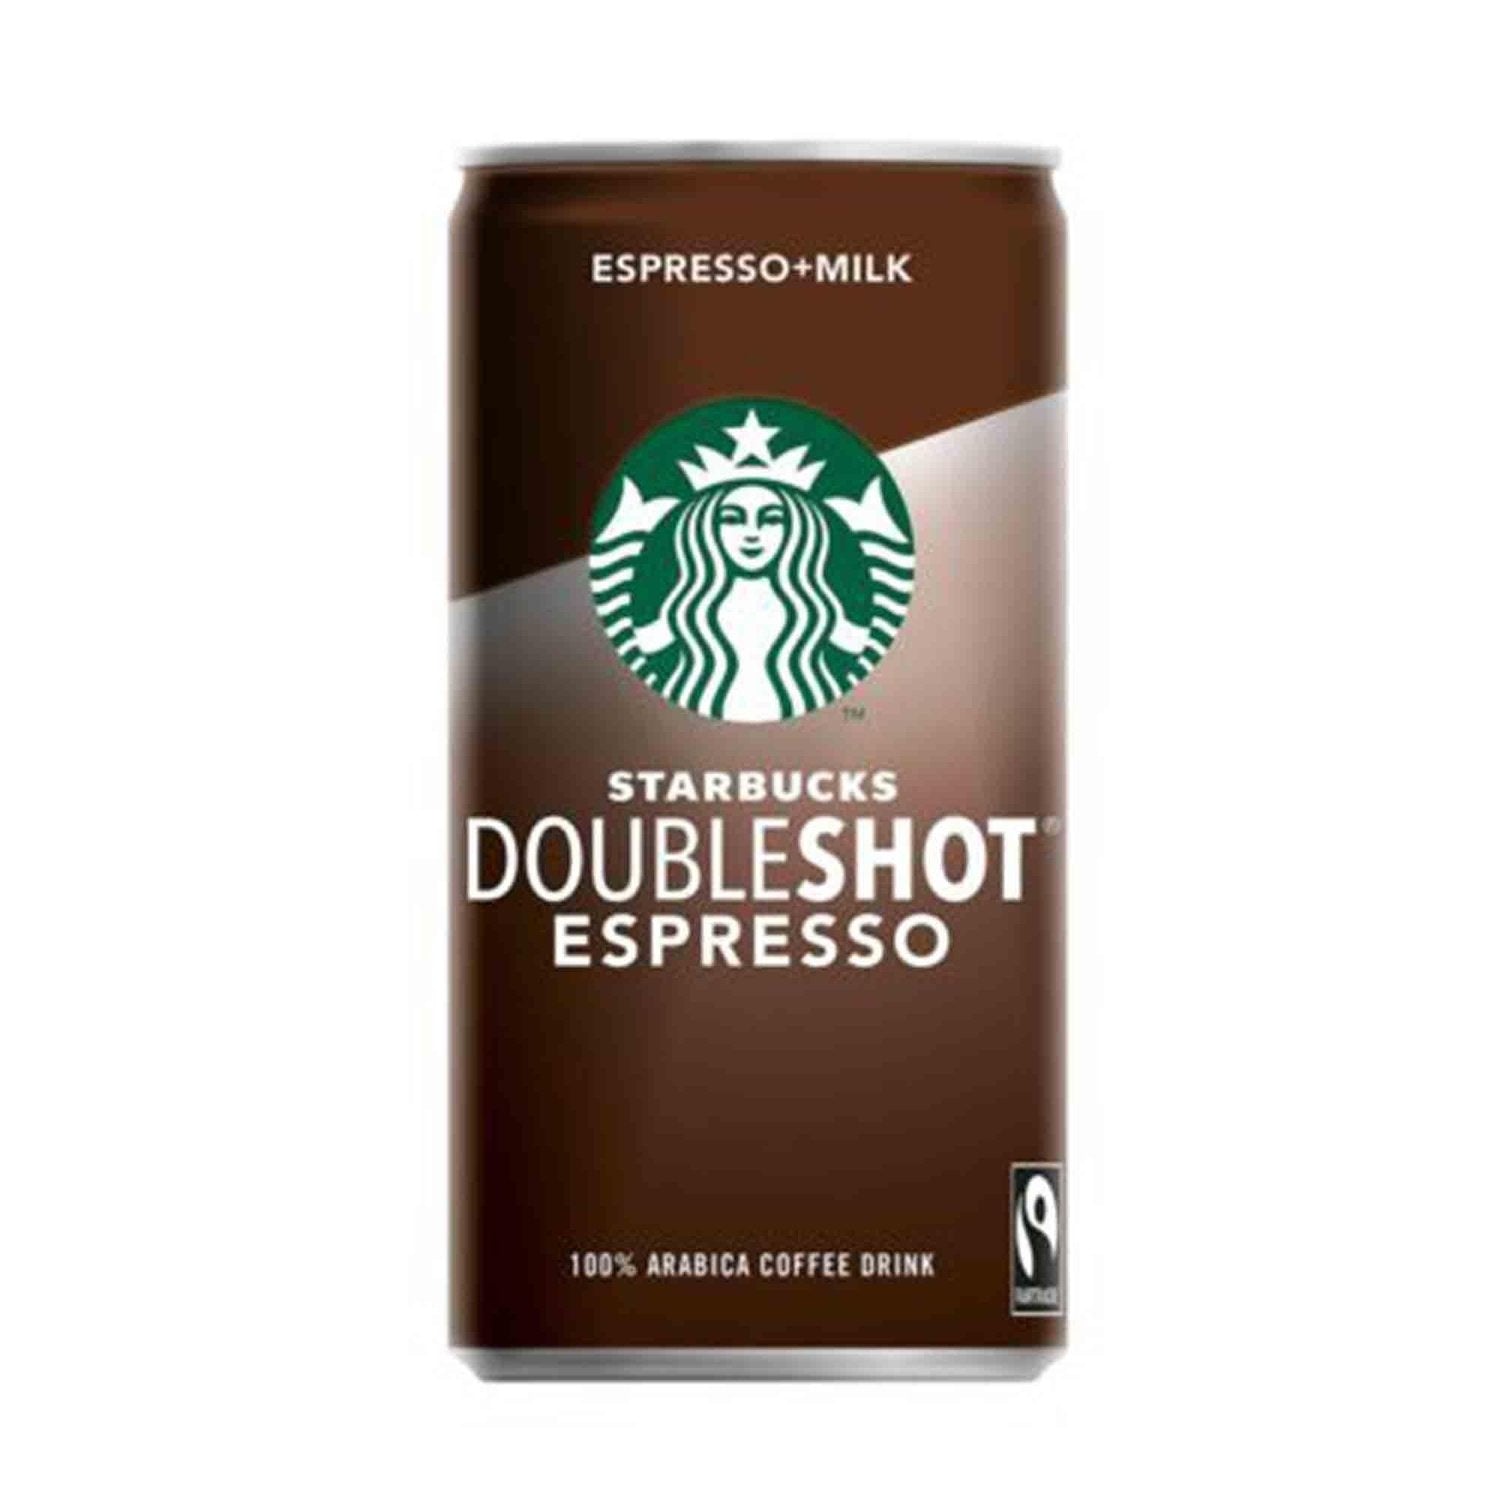 Starbucks Starbucks Doubleshot Espresso 200 ml Milk kaufen bei HighPowered.ch